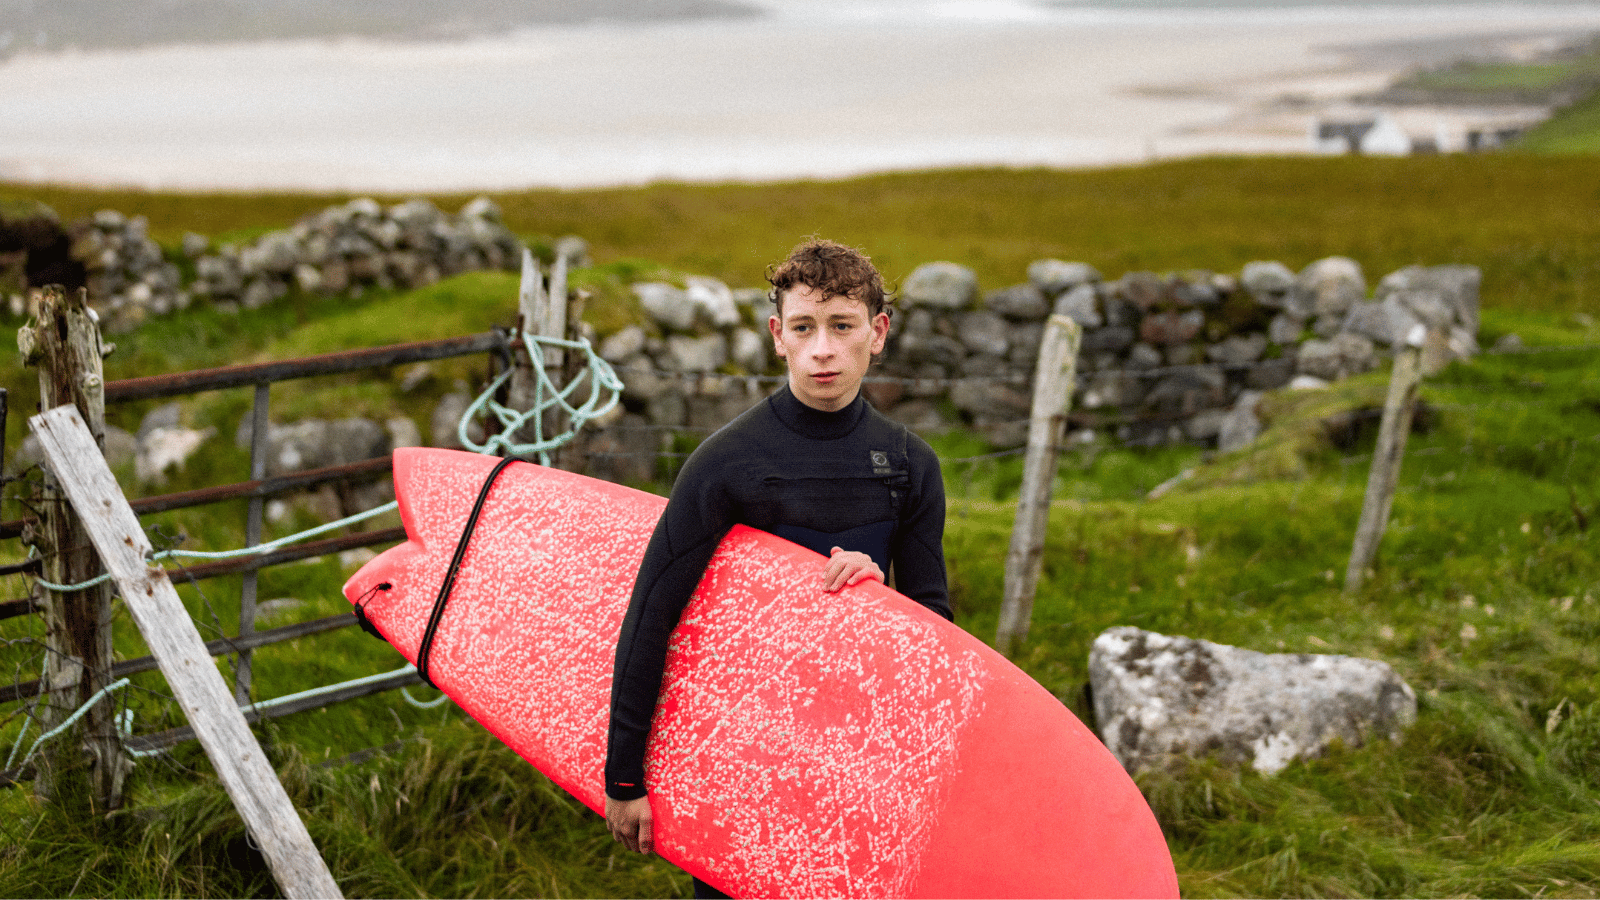 Still from silent Roar. Teenage boy in wetsuit holding red surf board.